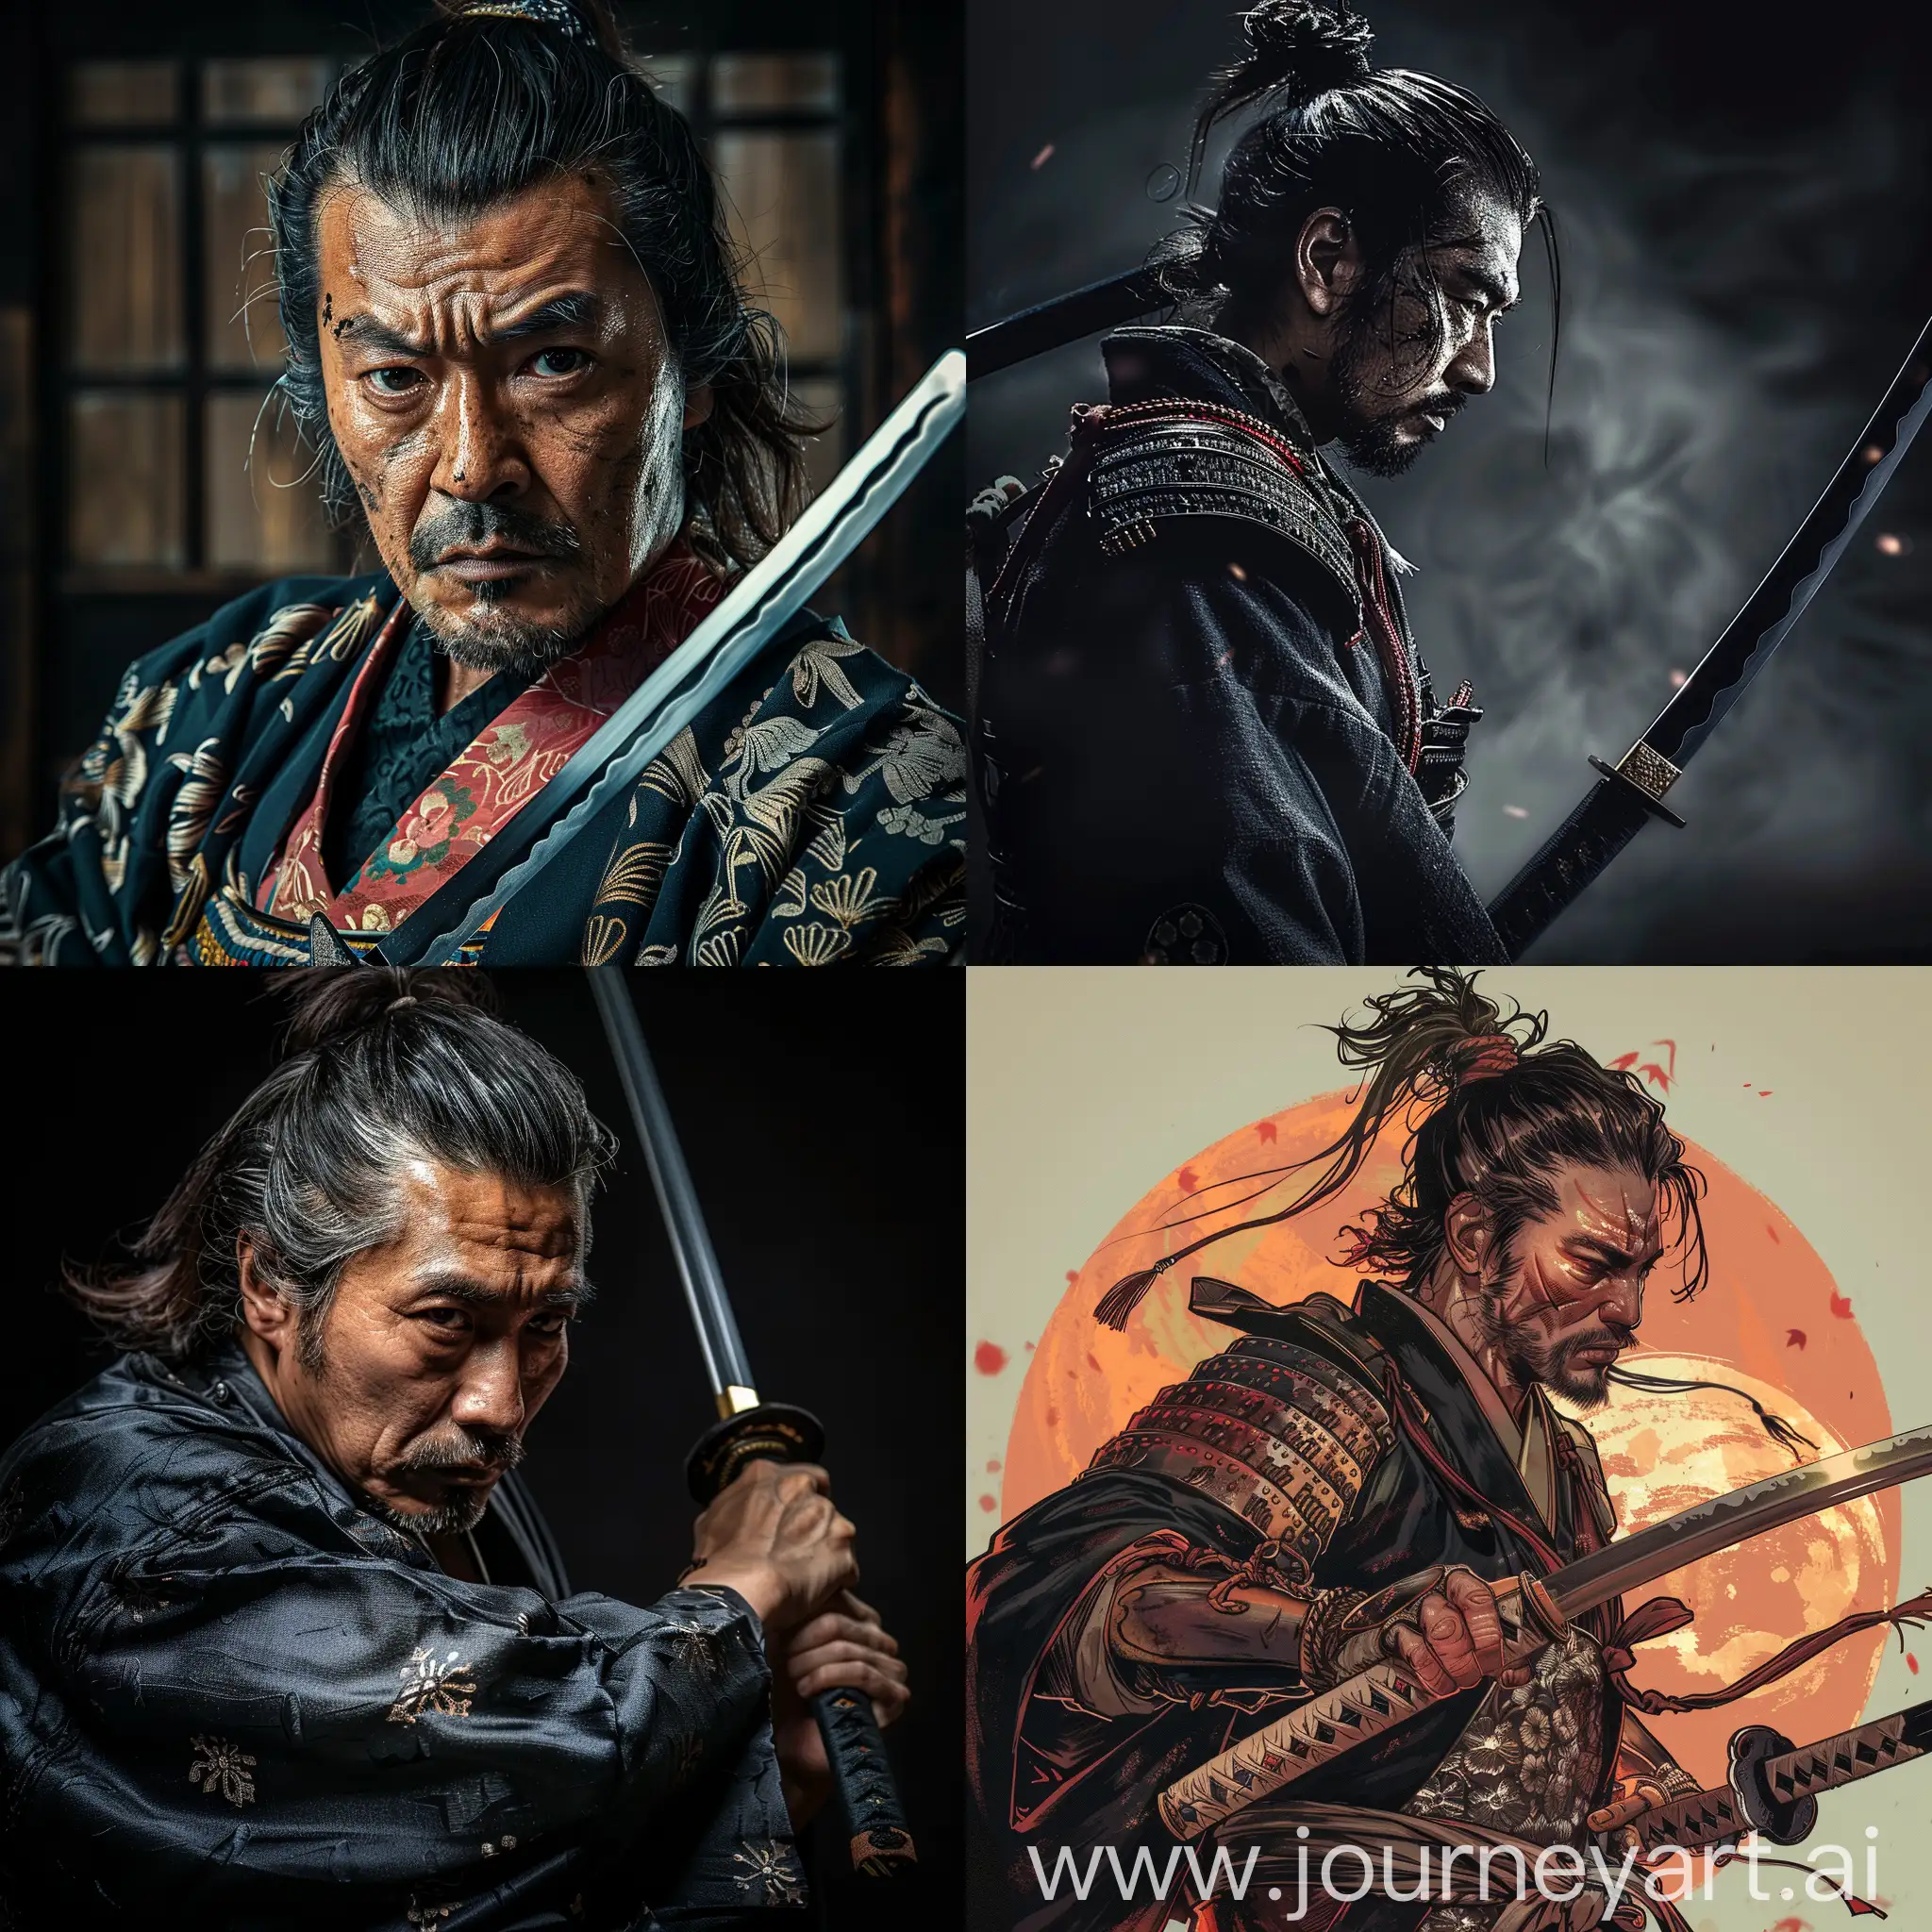 Samurai-Warrior-with-Katana-Sword